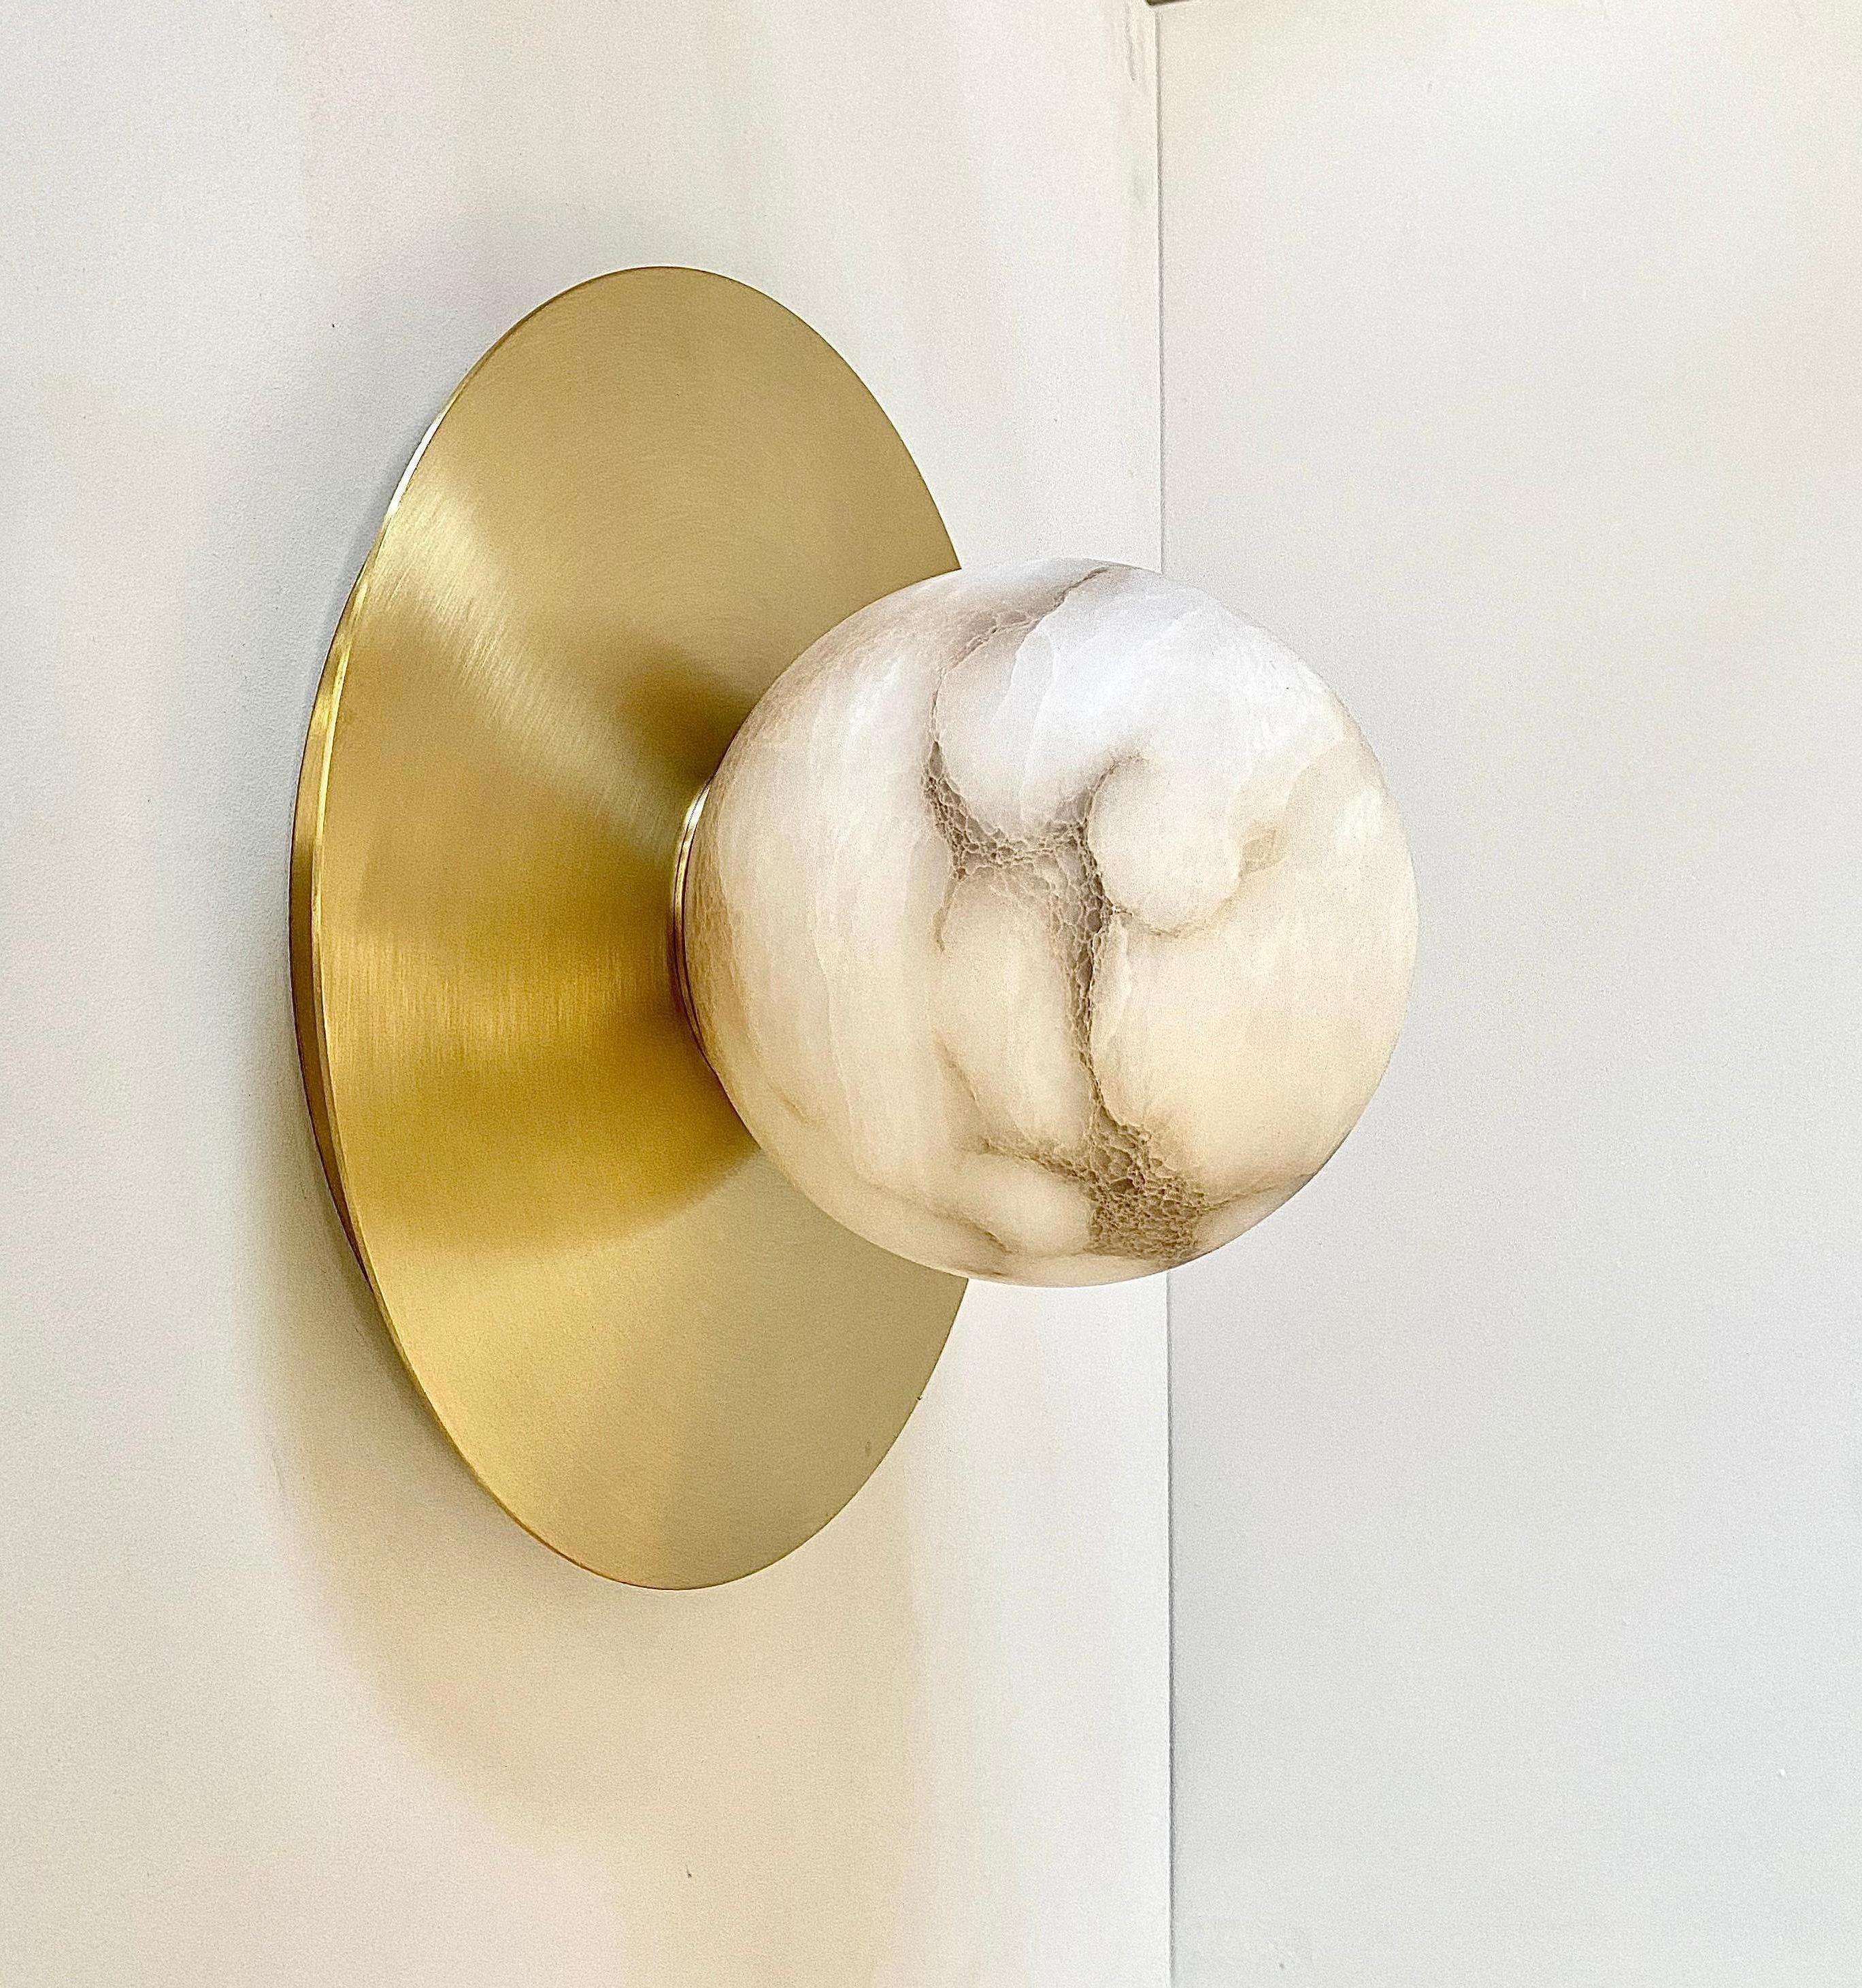 Organic Modern Bespoke Matlight Italian Alabaster Moon Minimalist Satin Brass Round Wall Light